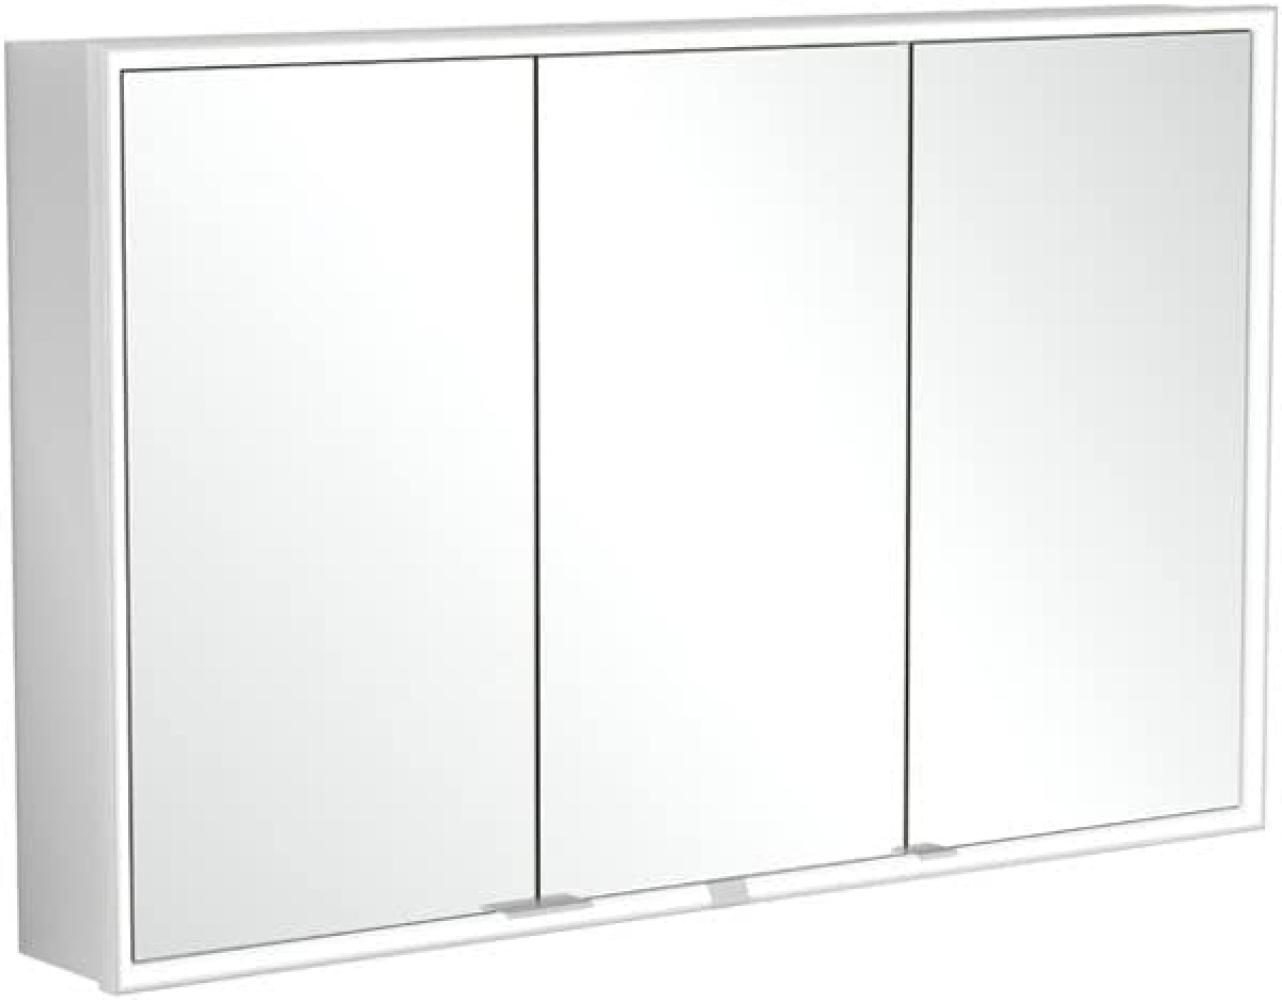 Villeroy & Boch My View Now, Spiegelschrank für Wandeinbau mit Beleuchtung, 1200x750x167,5 mm, mit Ein-/Ausschalter, Smart Home fähig, 3 Türen, A45812 - A4581200 Bild 1